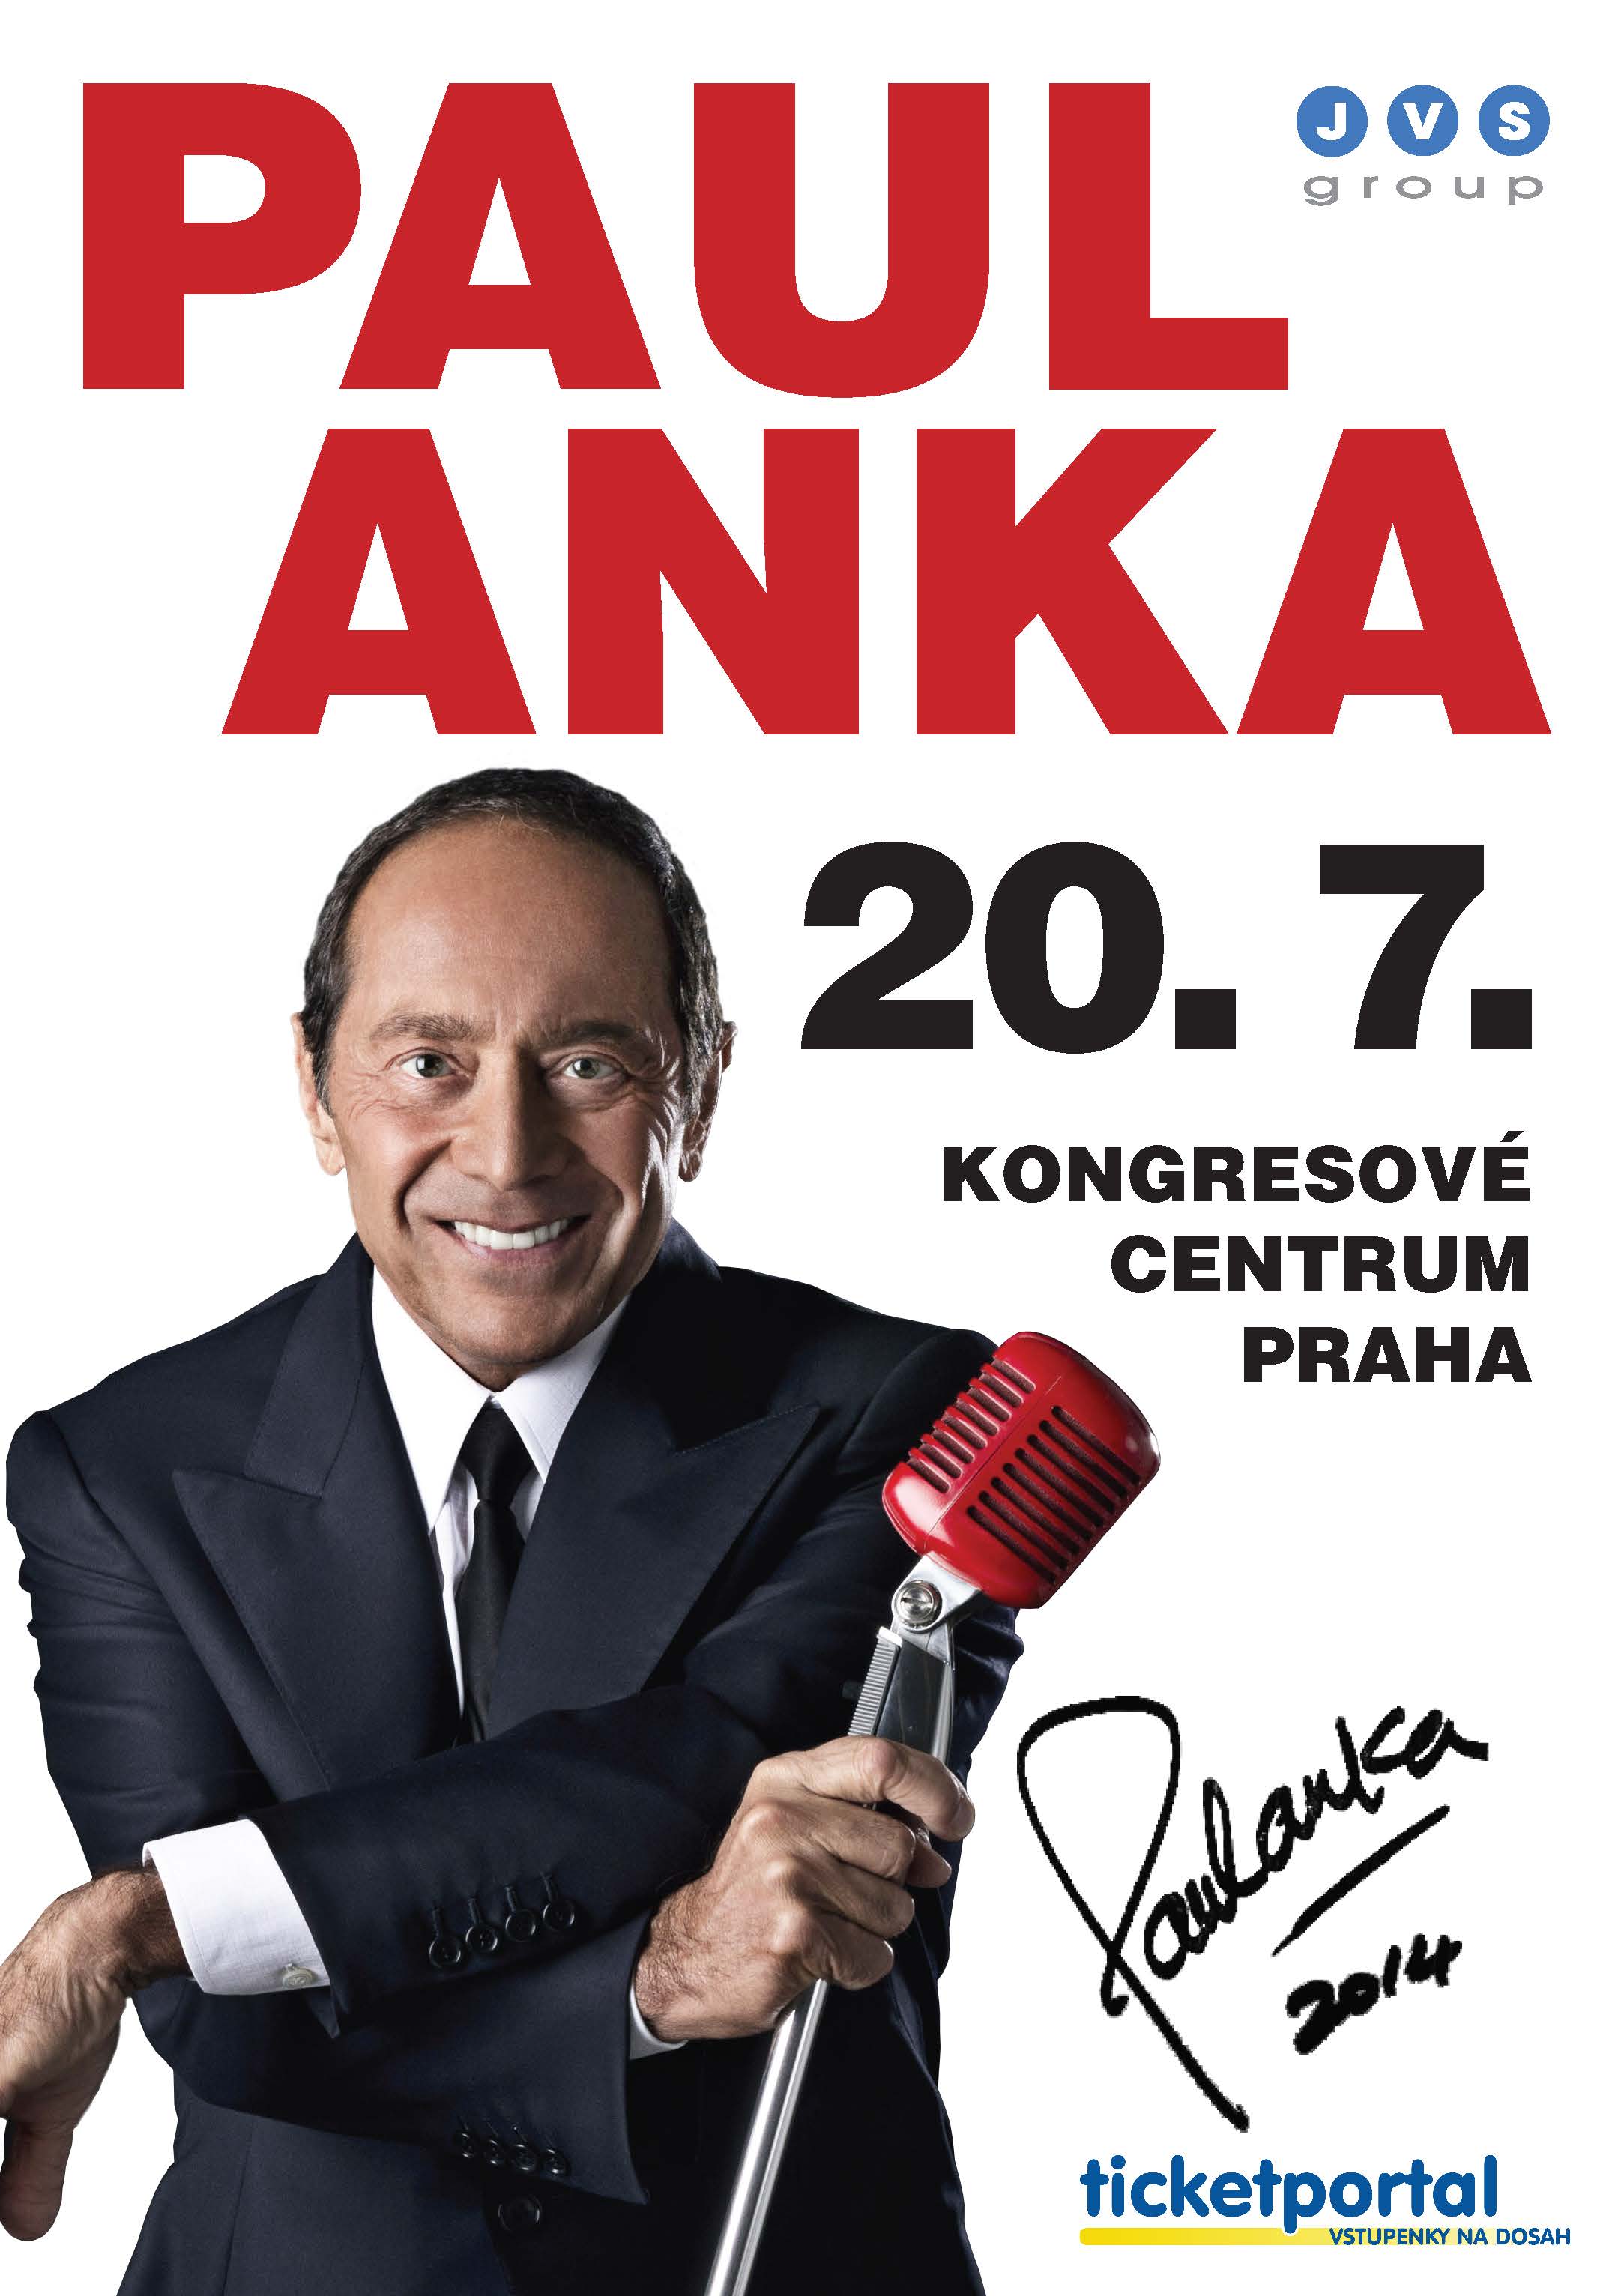 Koncert se uskuteční 20. července 2014 v pražském Kongresovém centru